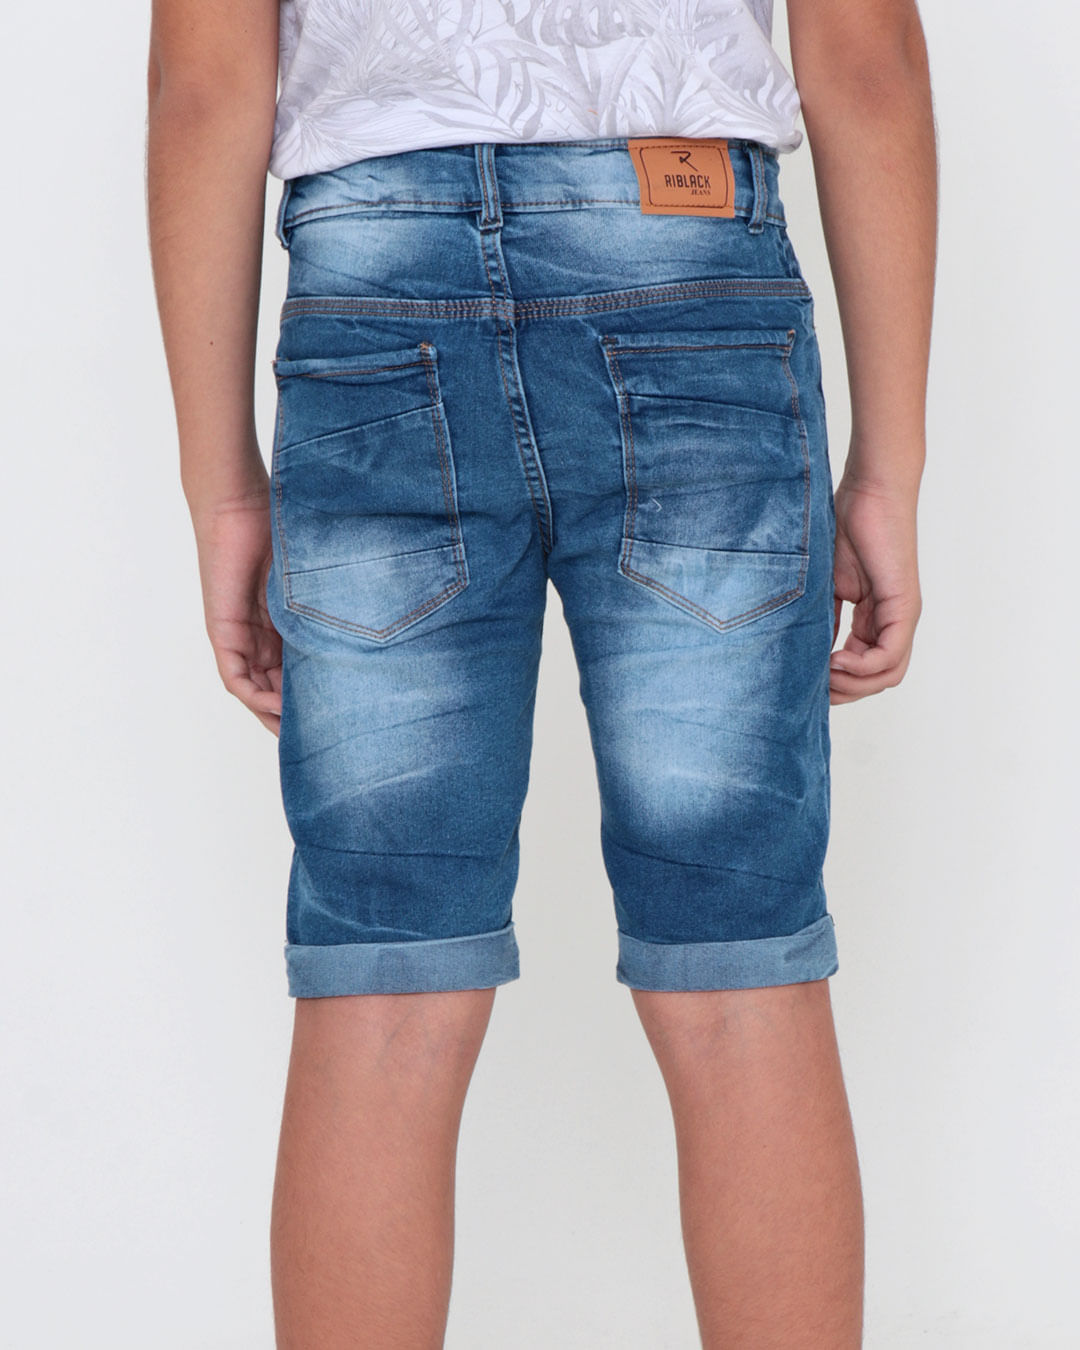 Short-Jeans-Juvenil-Com-Recorte-Barra-Dobrada-Azul